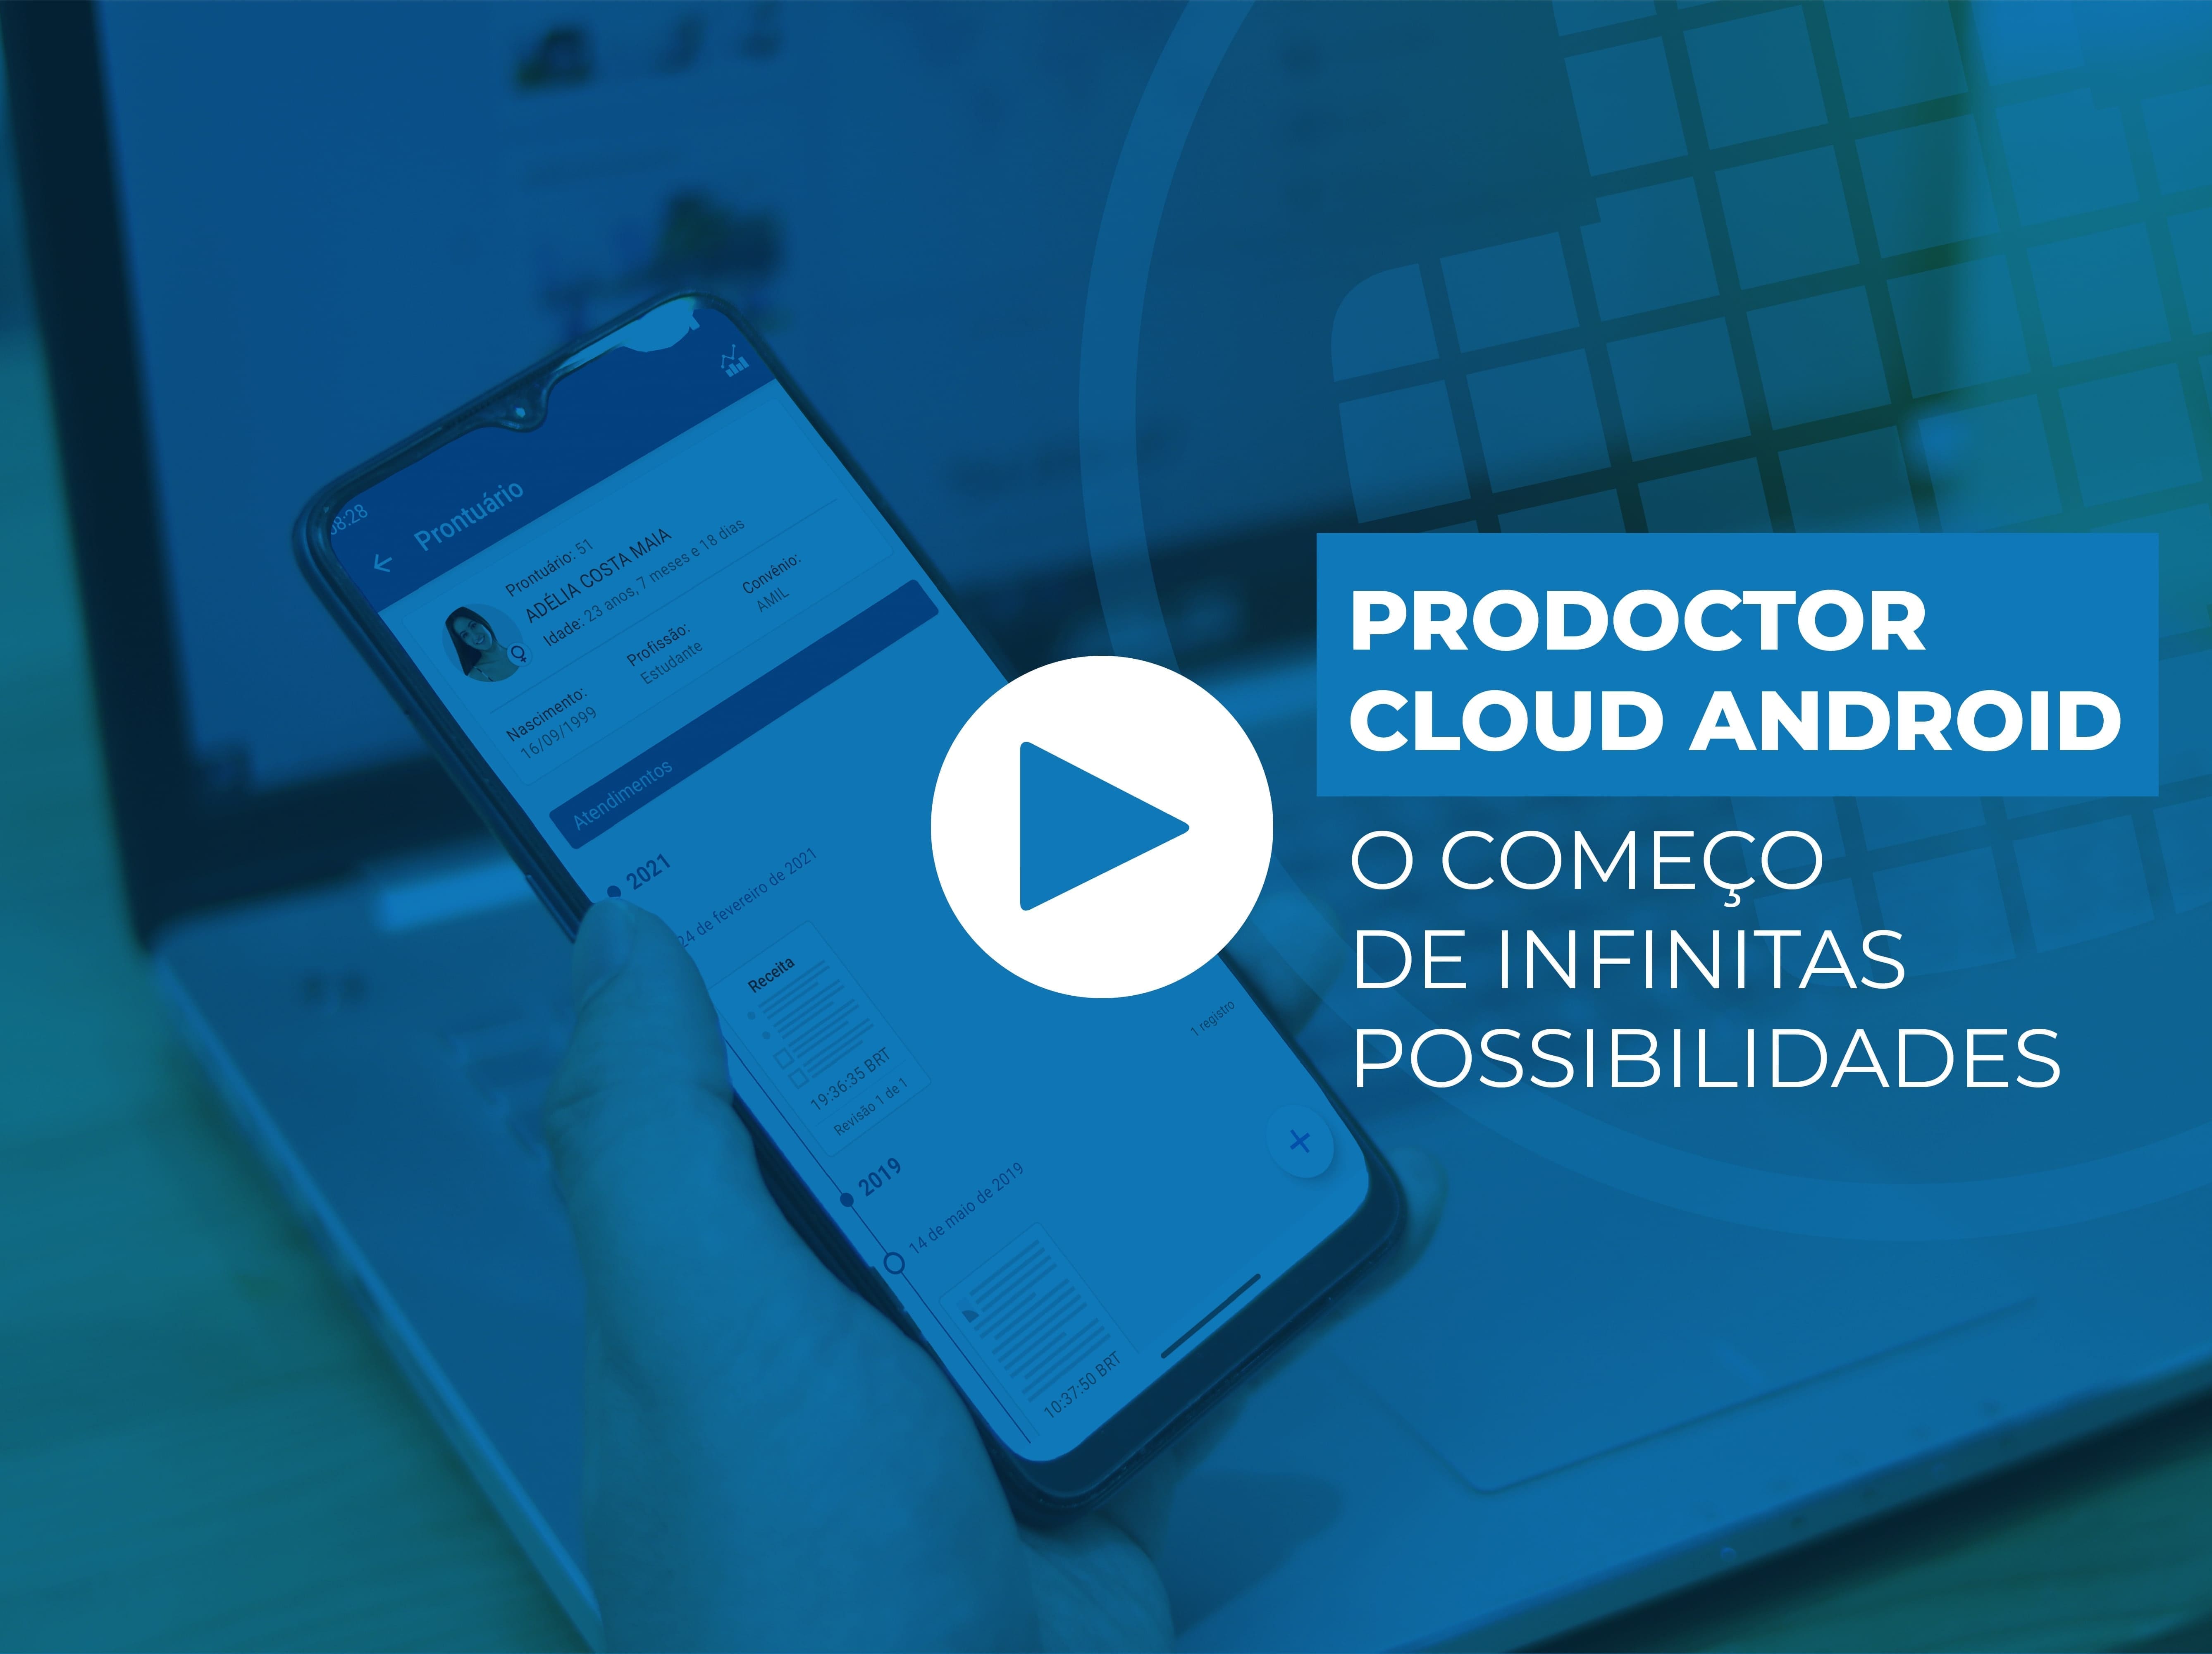 Novo ProDoctor Cloud Android: apenas o começo de infinitas possibilidades.